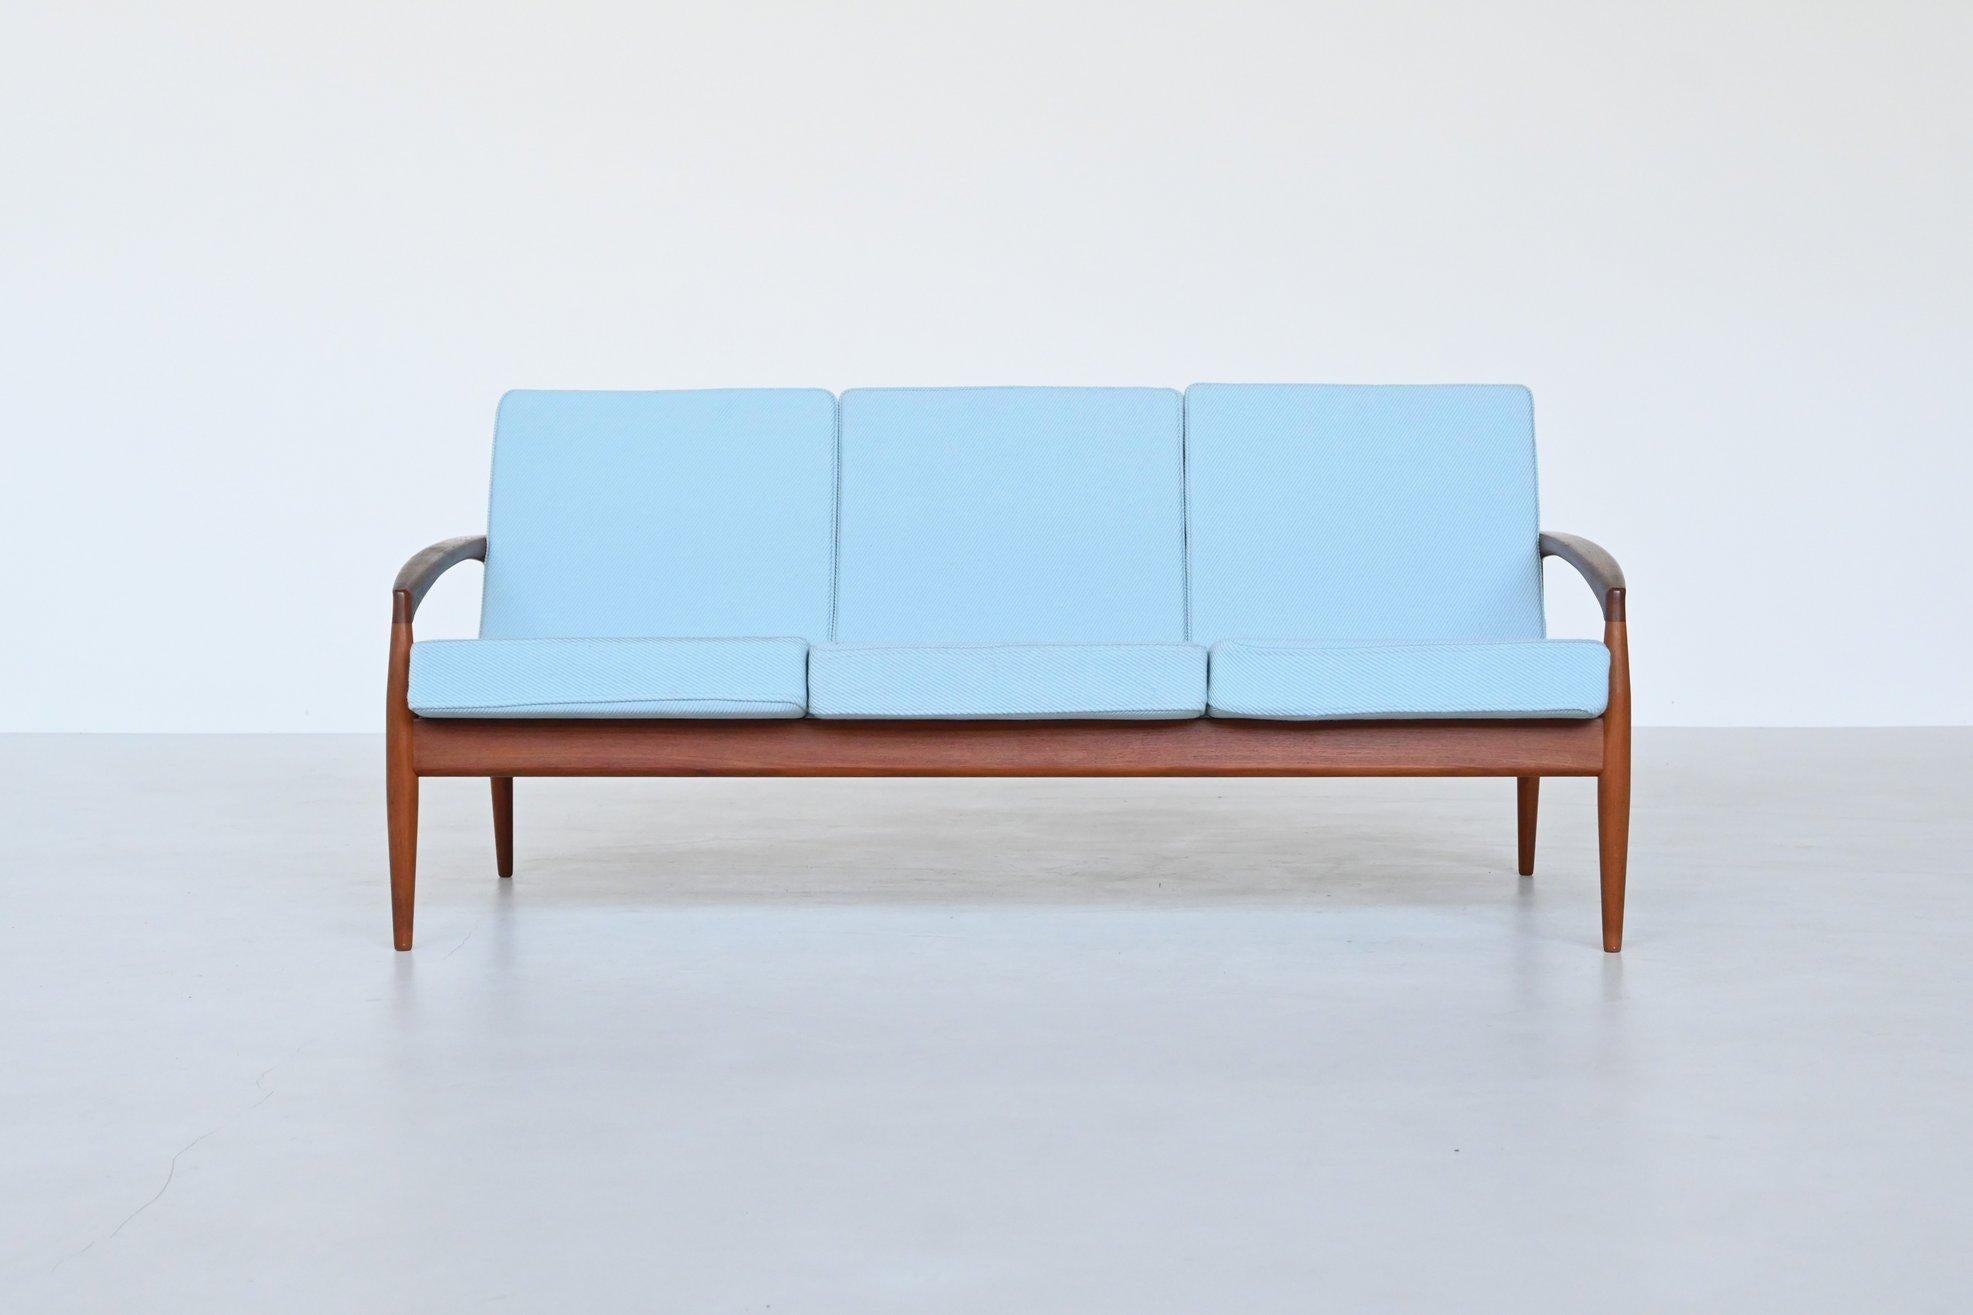 Magnifique canapé trois places de forme élégante, modèle Eleg n° 121, conçu par Kai Kristiansen et fabriqué par Magnus Olesen au Danemark en 1956. 121 conçu par Kai Kristiansen et fabriqué par Magnus Olesen, Danemark 1956. Ce canapé sculpté est doté